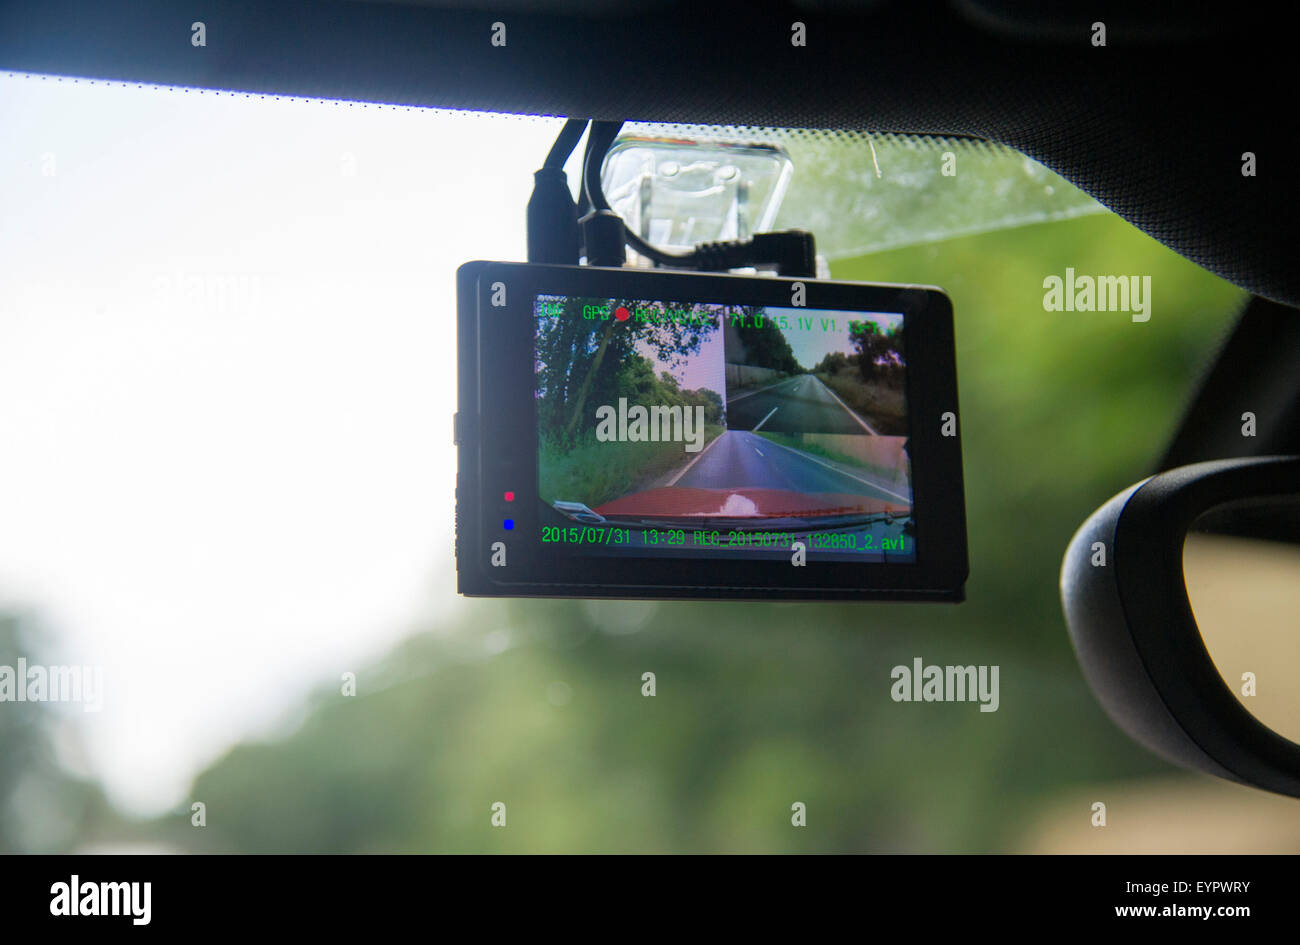 https://c8.alamy.com/comp/EYPWRY/dashcam-car-windscreen-video-camera-EYPWRY.jpg